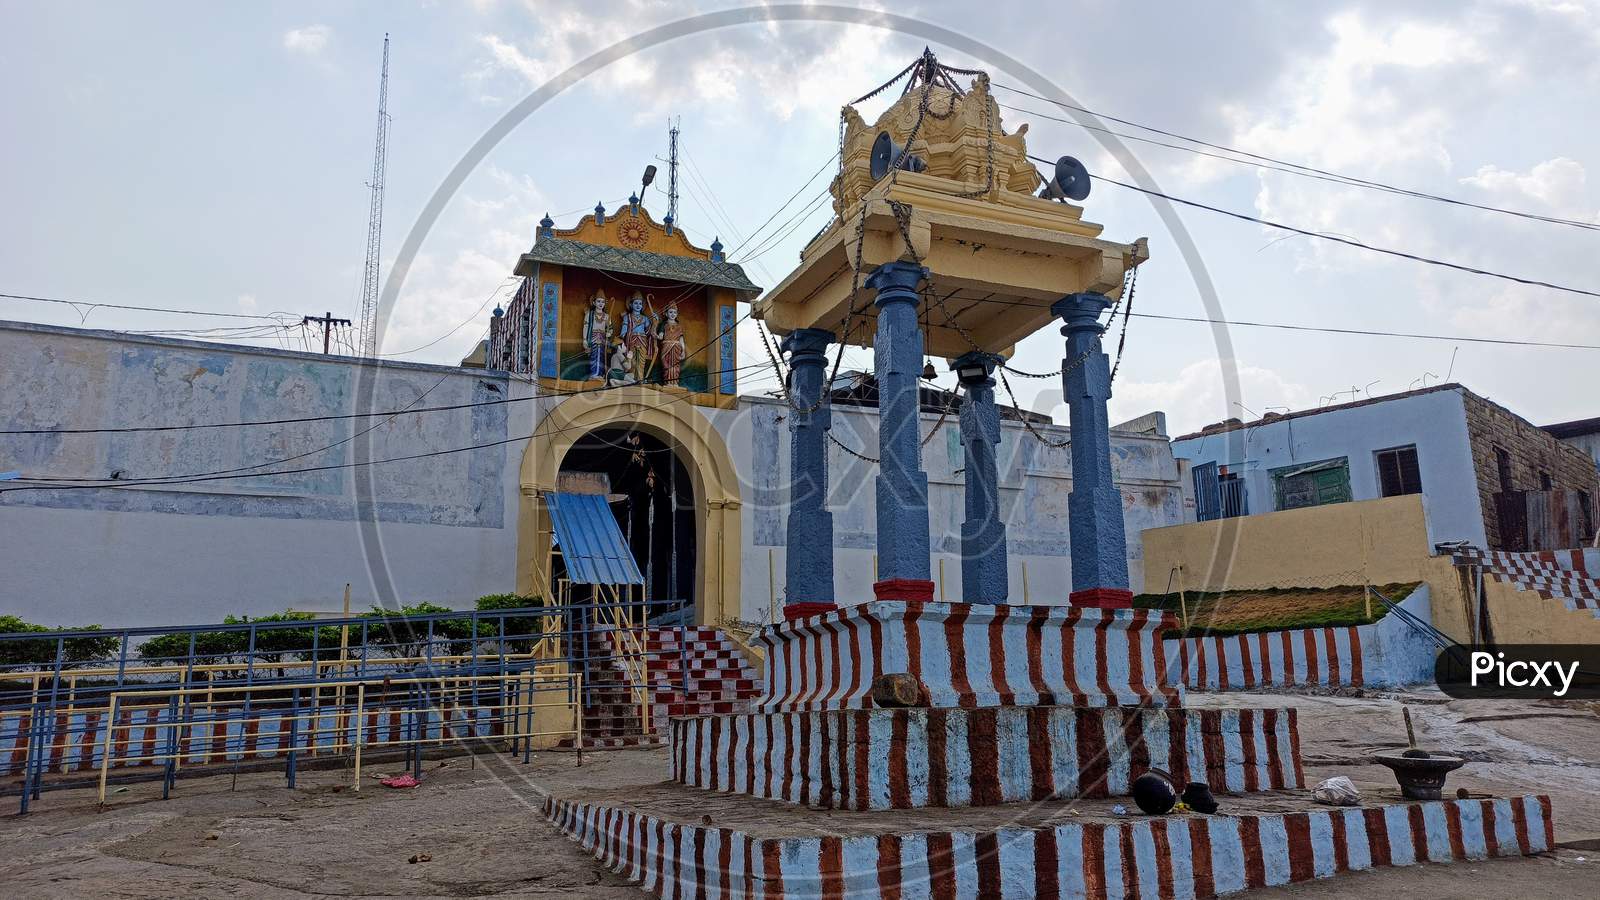 Manyamkonda Sri Lakshmi Venkateshwara Swamy Temple Mahabubnagar